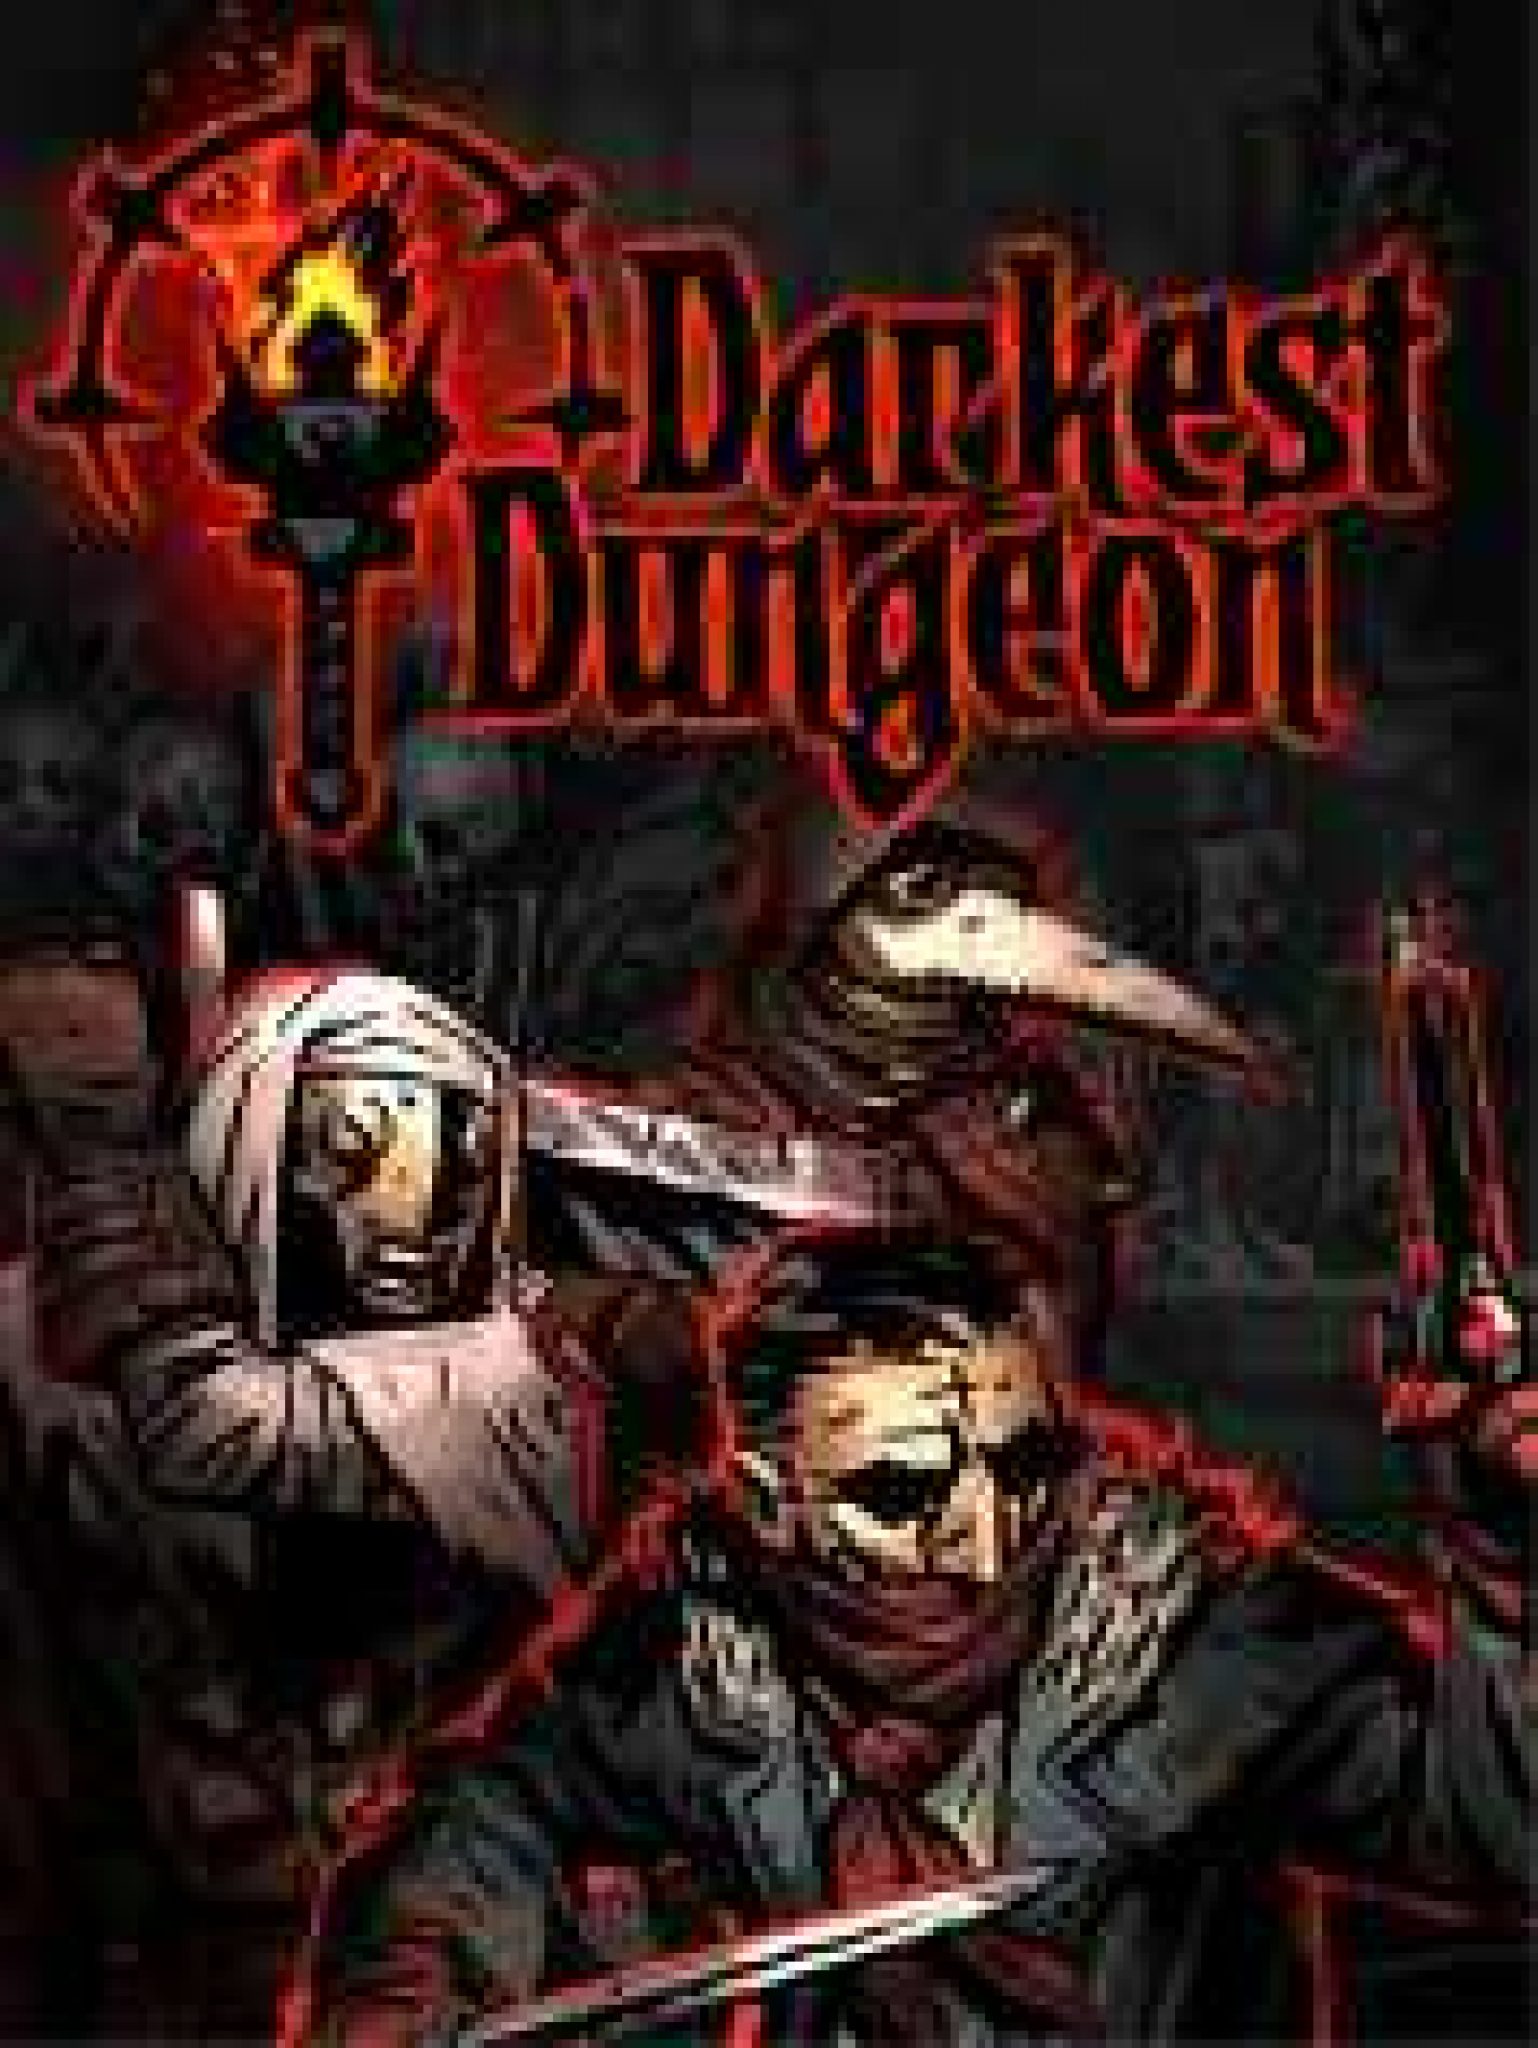 darkest dungeon dlc download